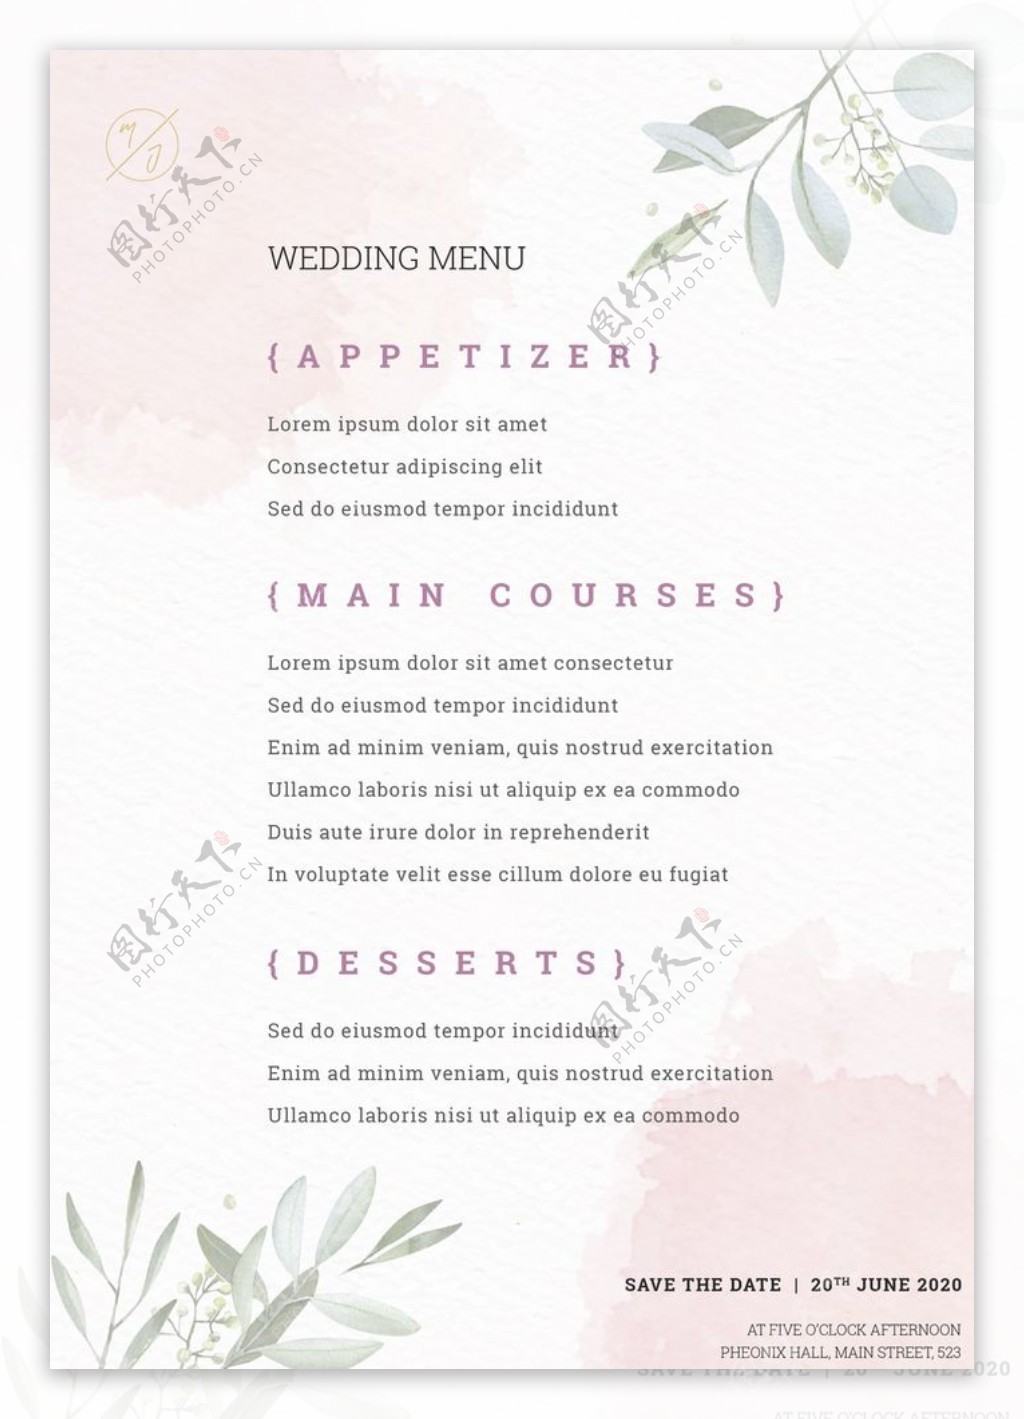 婚礼菜单海报图片